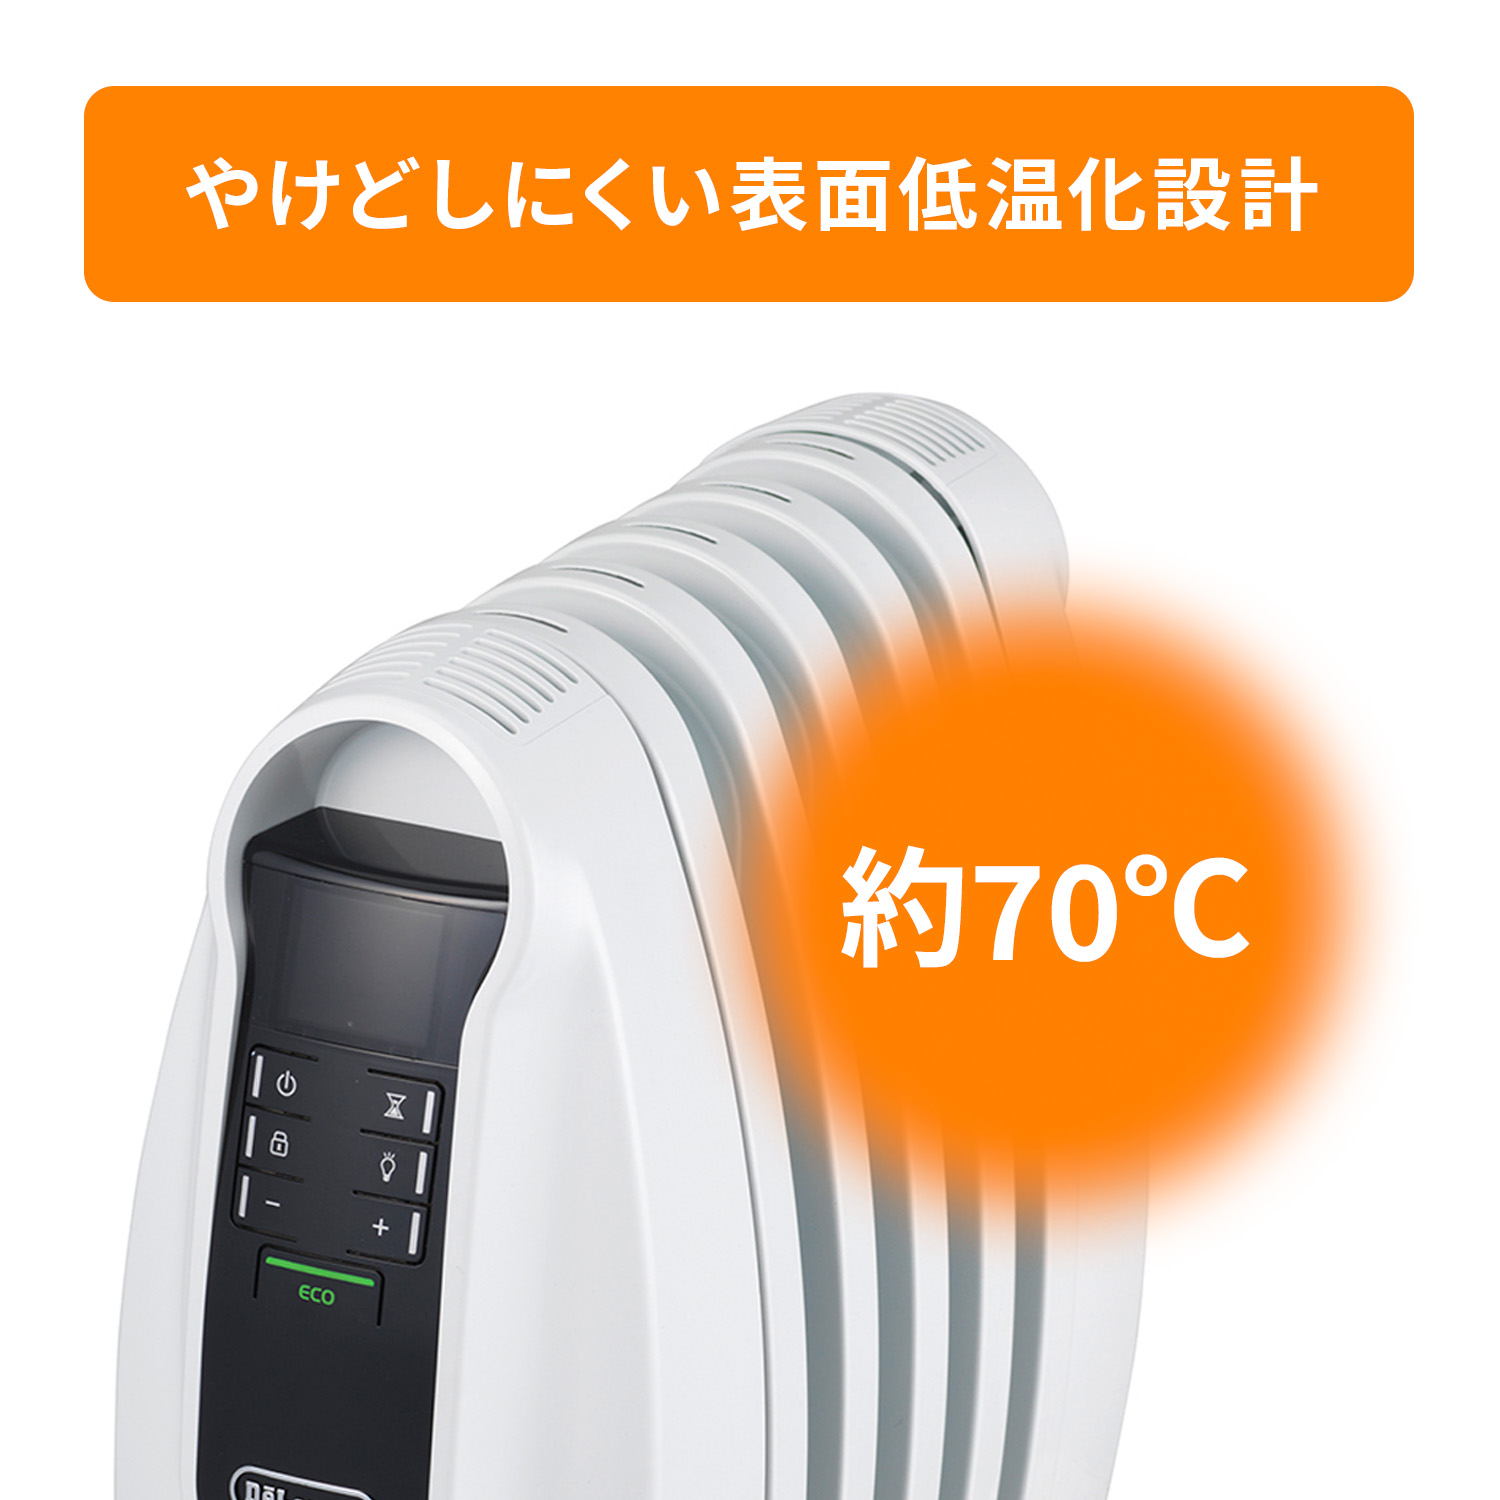 デロンギ オイルヒーター NJ0505Eの製品情報 |ゼロ風暖房デロンギ ヒーター 風が出ないのに、部屋全体が暖かい。